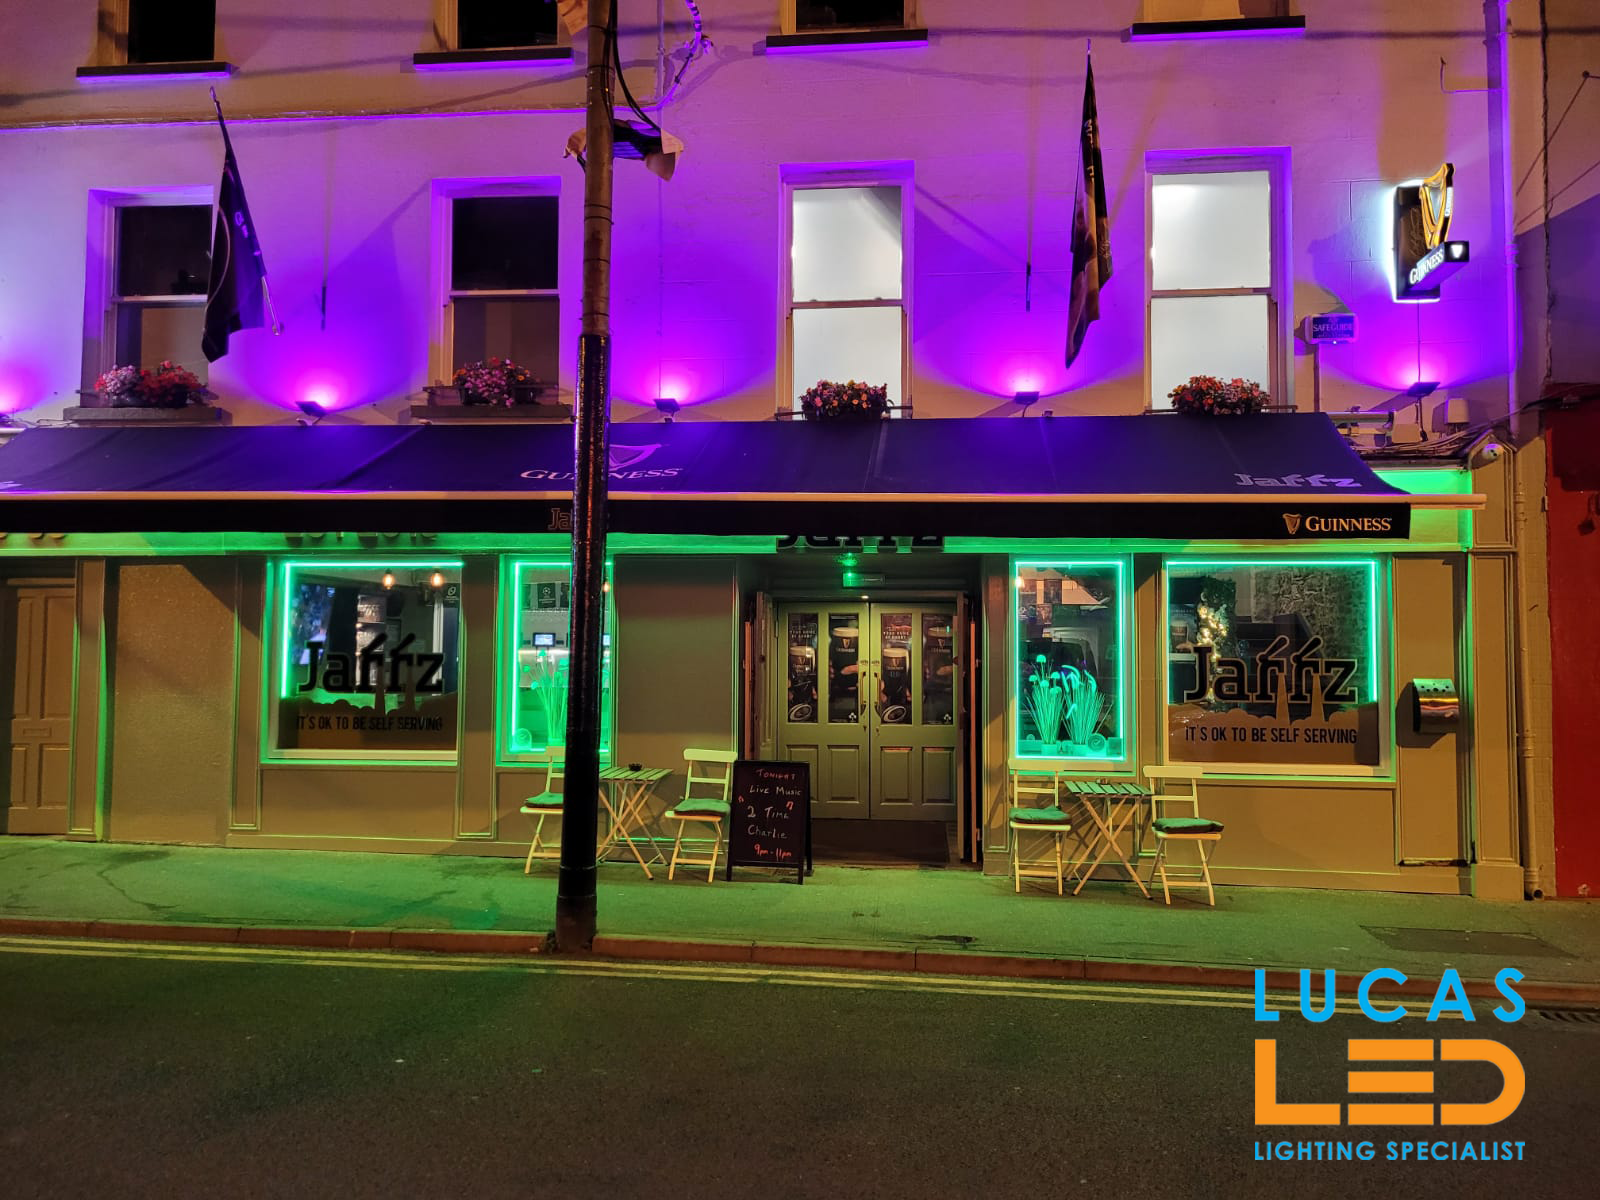 LED lighting for Restaurants